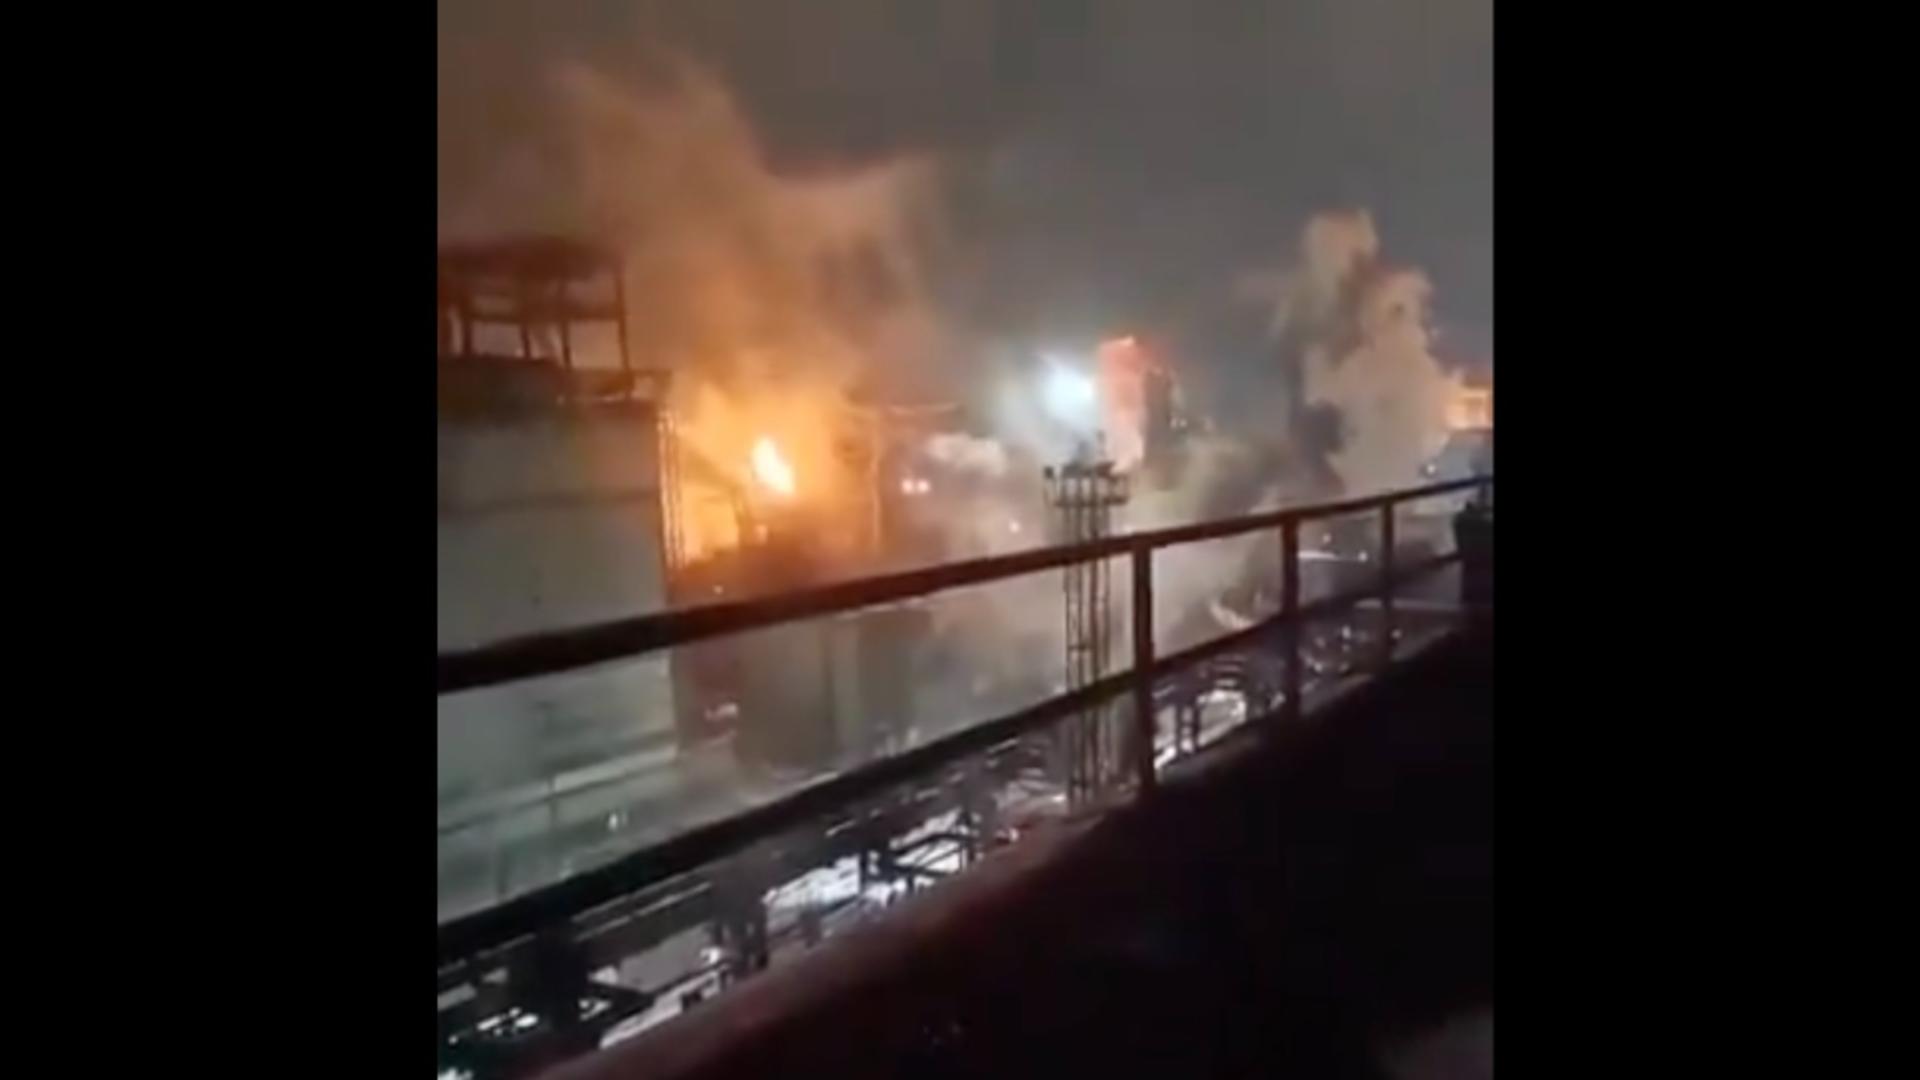 Incendiu devastator la cea mai mare fabrică de oțel din Rusia. Drone necunoscute au atacat noaptea gigantul industrial – VIDEO